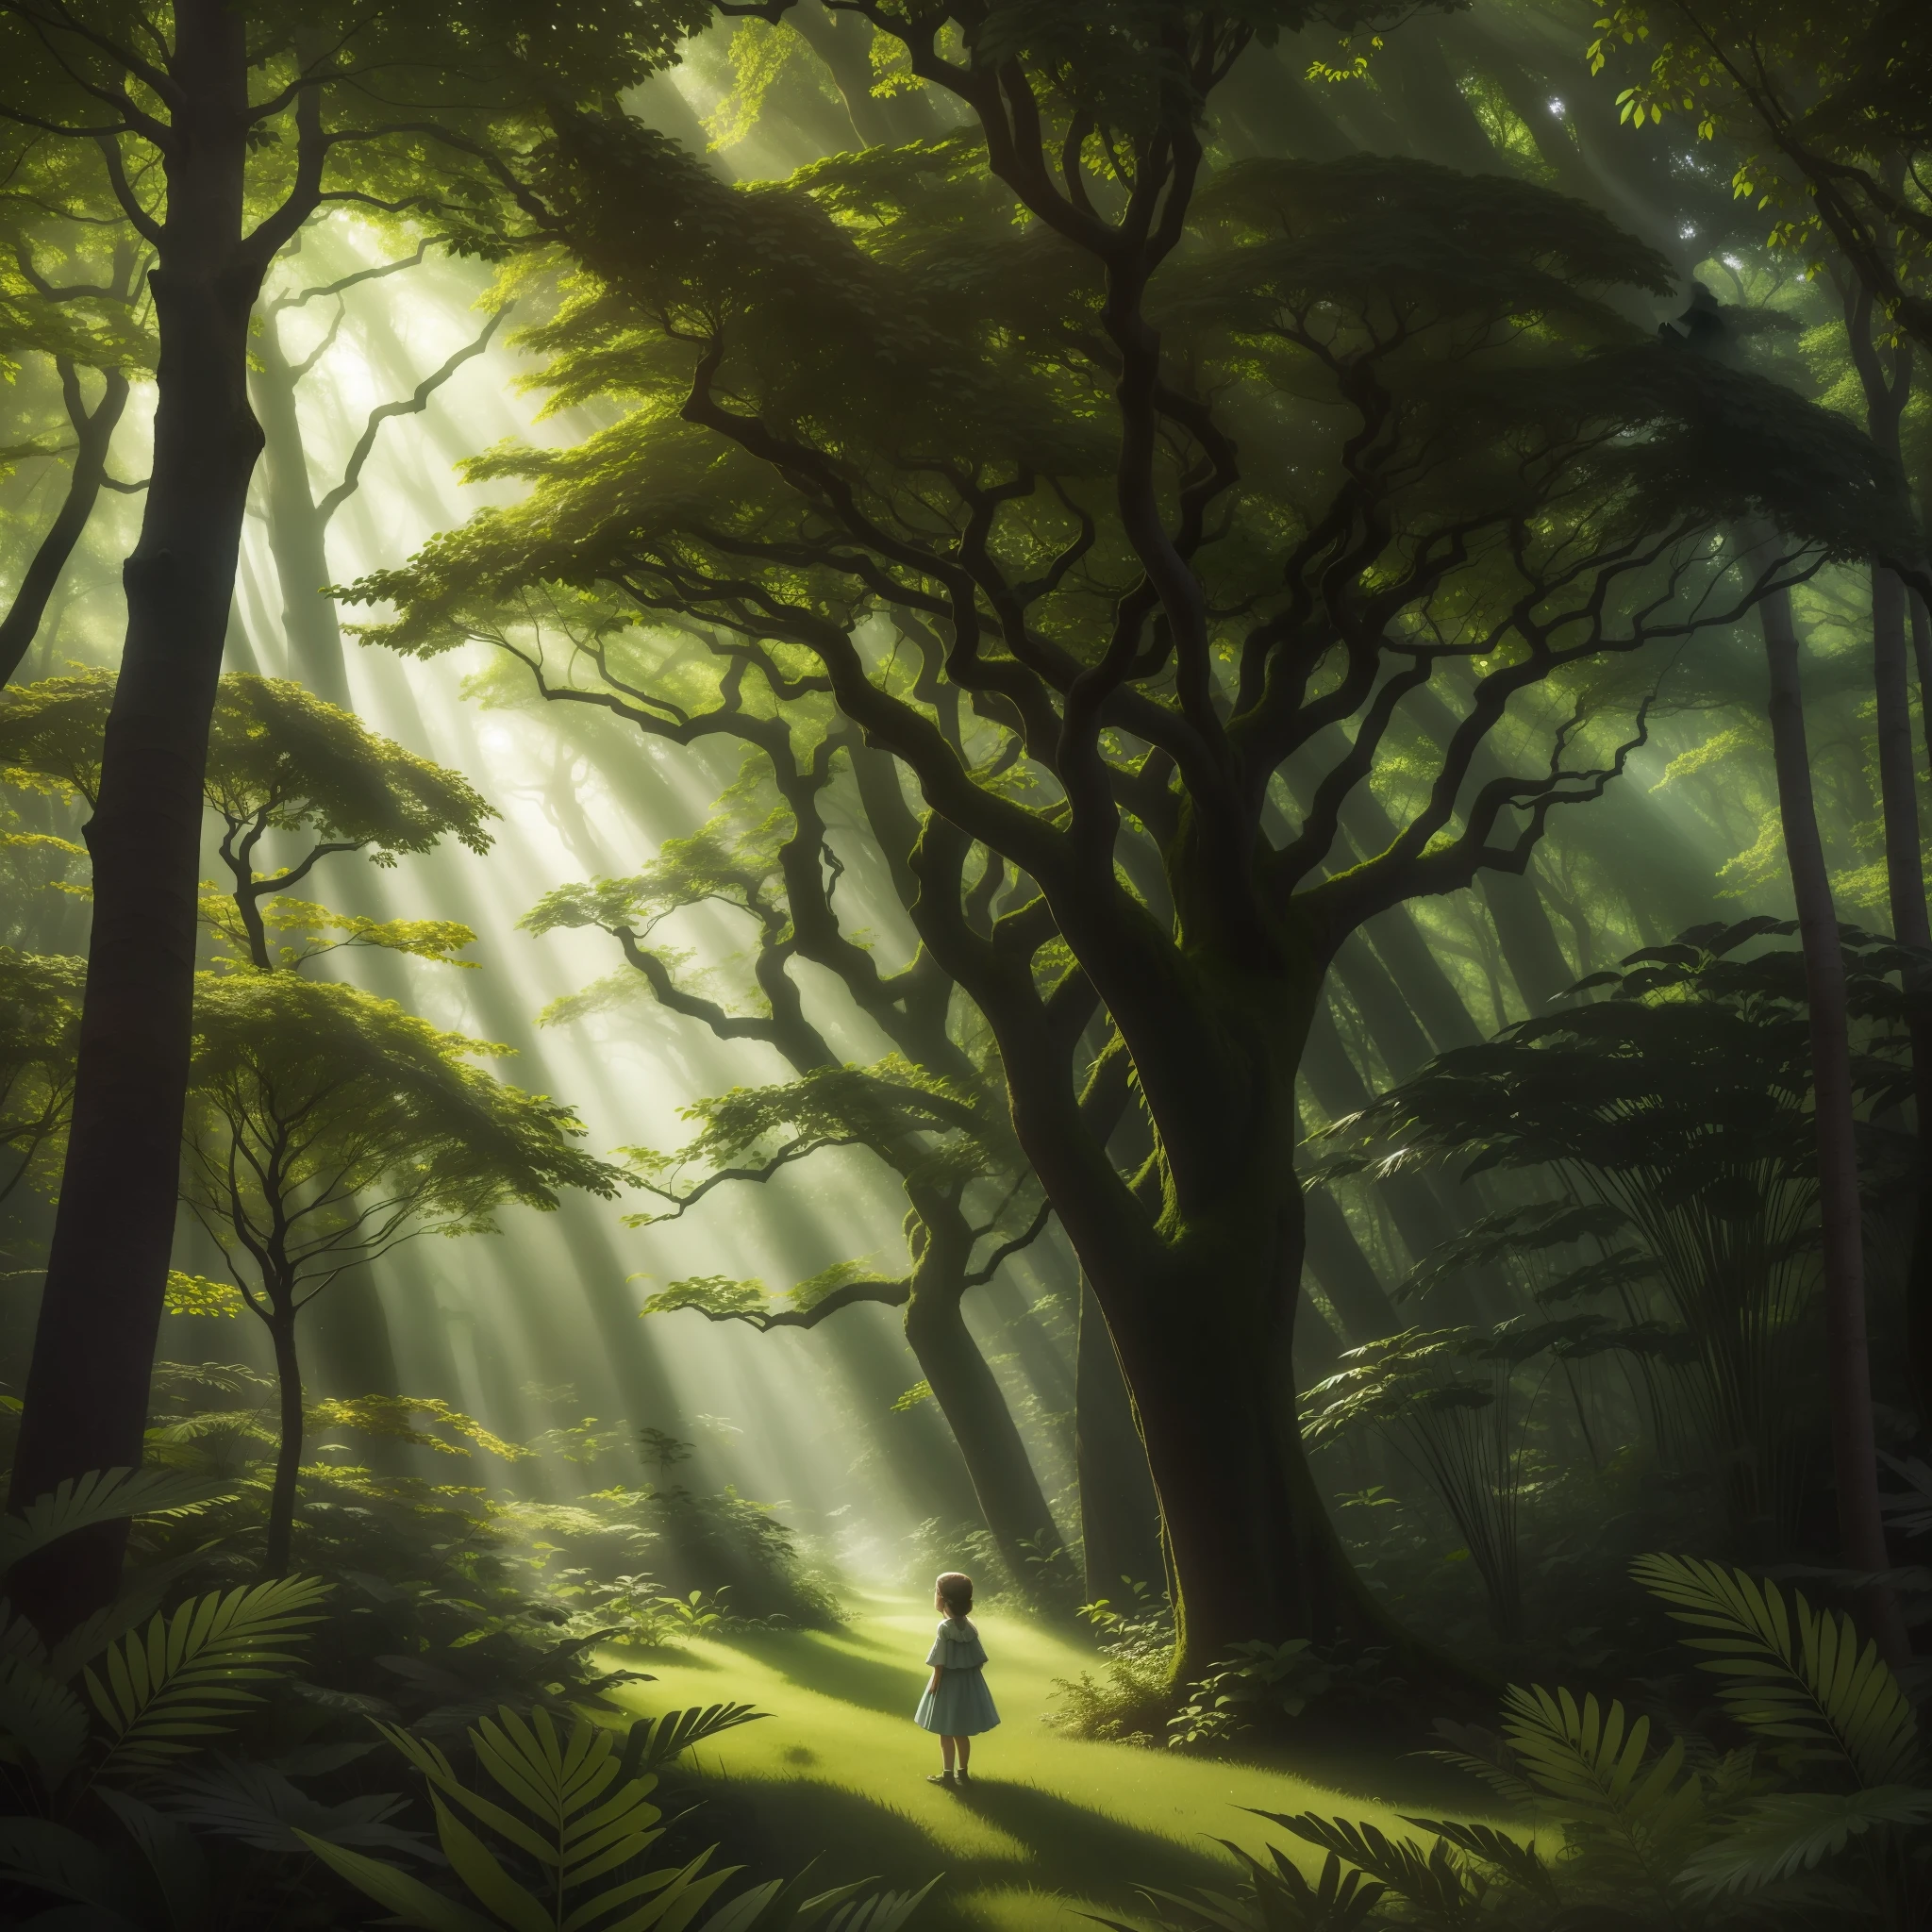 この画像では, 魅惑の森は謎に満ちた魔法のシーンを明らかにします. 背の高い, 緑豊かな木々は、日光を繊細にろ過する緑豊かな天蓋を形成します, 静かで居心地の良い環境づくり. 森の中心に, 勇敢な人が巨人の上に立っている